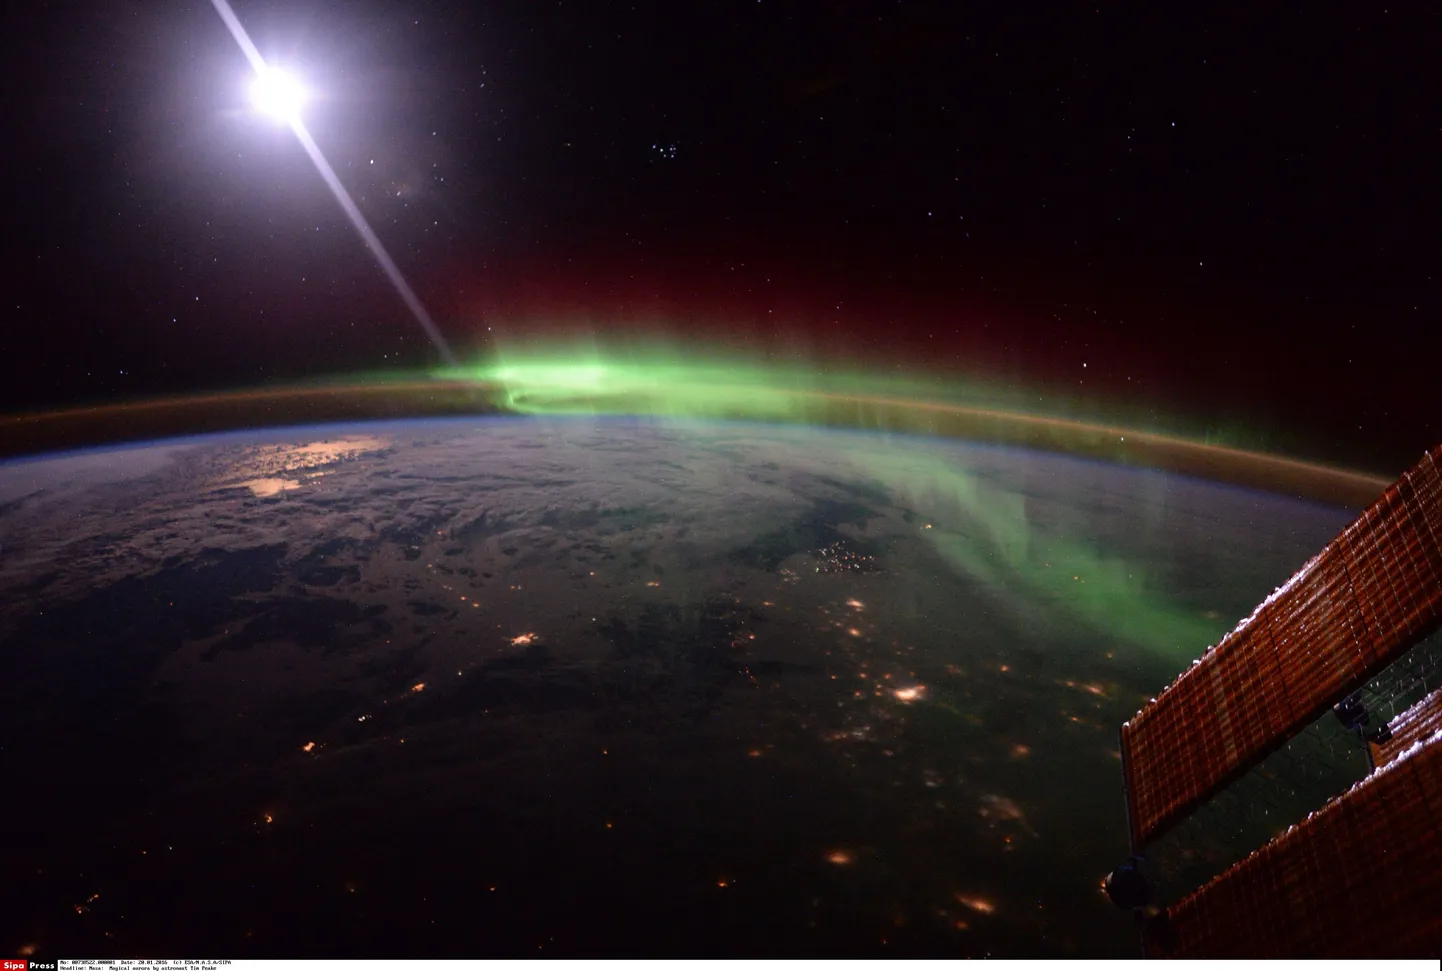 Фото, сделанное Европейским космическим агентством ESA.